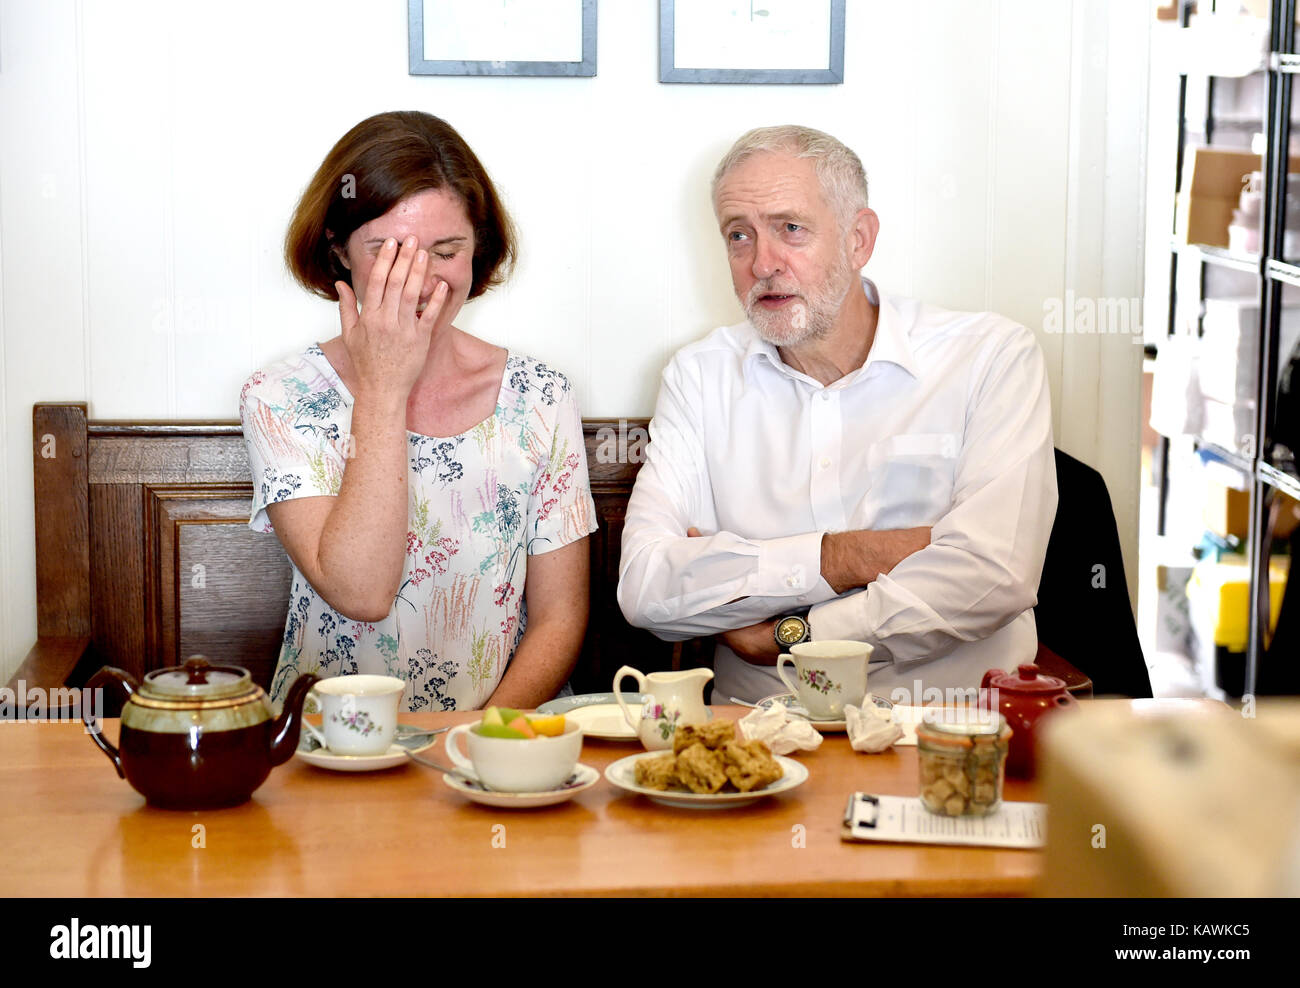 Brighton UK 23 settembre 2017 - Jeremy Corbyn il leader del Partito laburista incontra Beccy Cooper, consigliere laburista del reparto Worthing Marine, durante una visita al Baked Cafe di Worthing prima dell'inizio della Conferenza del Partito laburista che si terrà a Brighton nei prossimi giorni Foto Stock